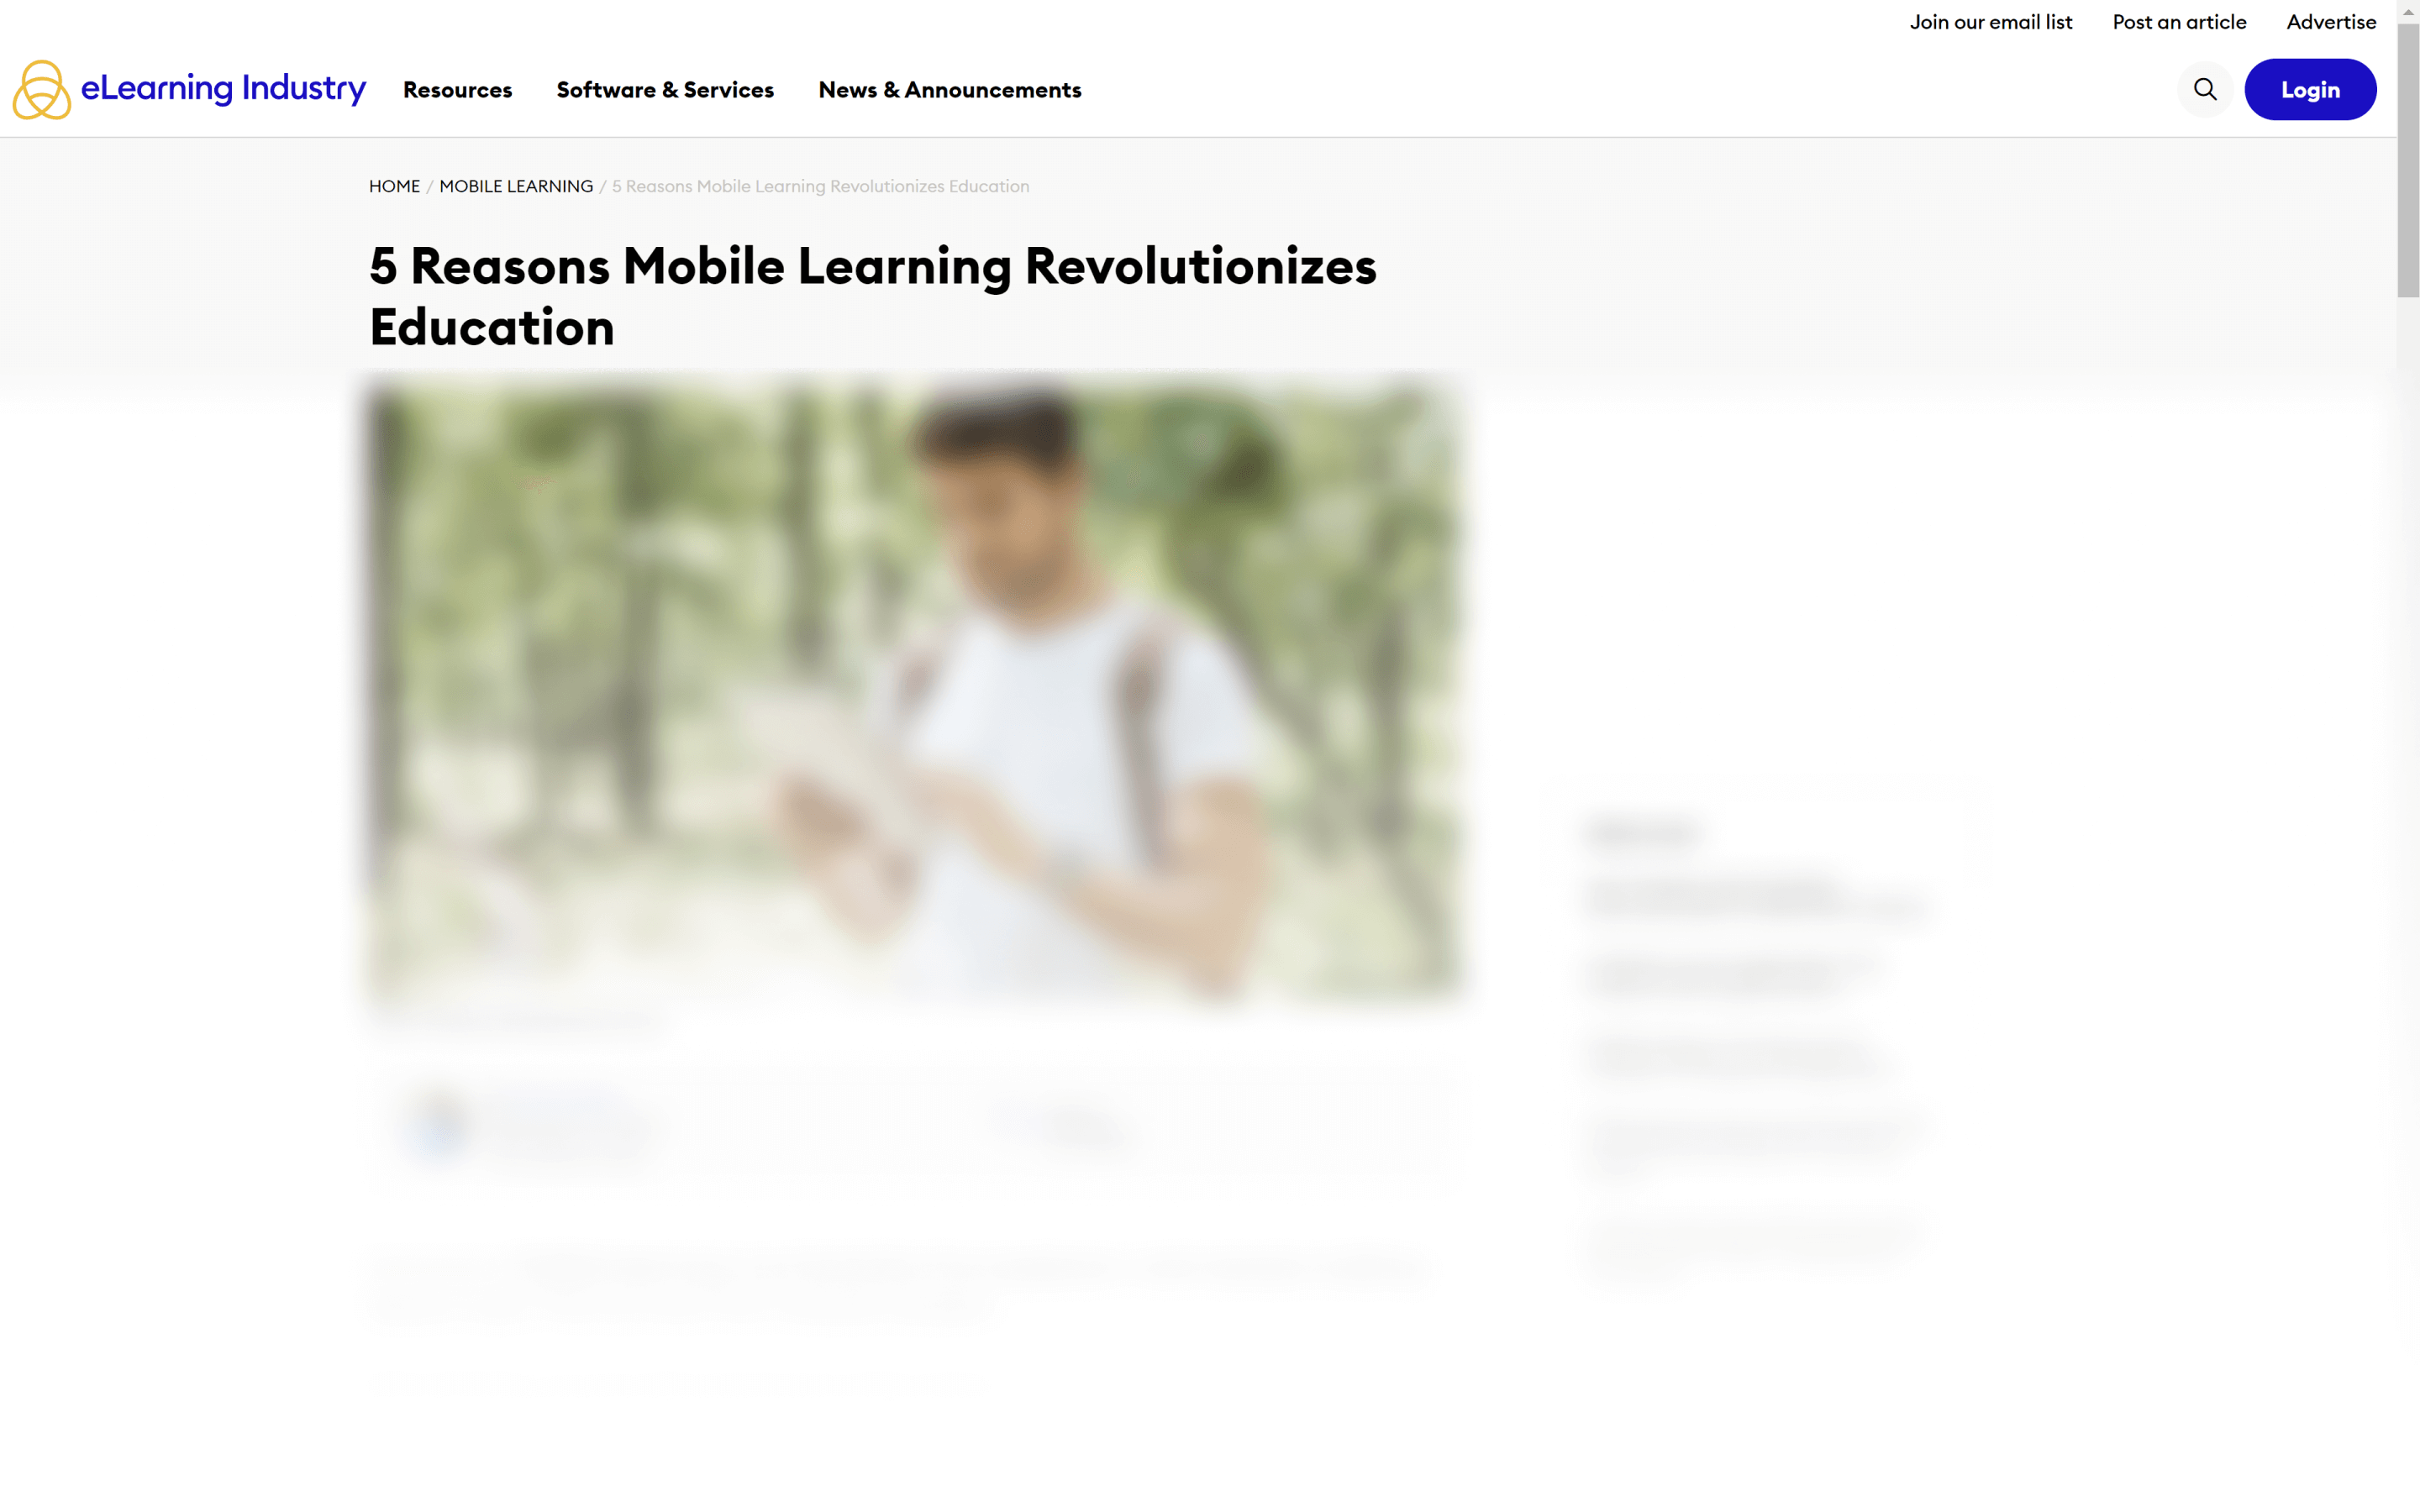 5 Reasons Mobile Learning Revolutionizes Education